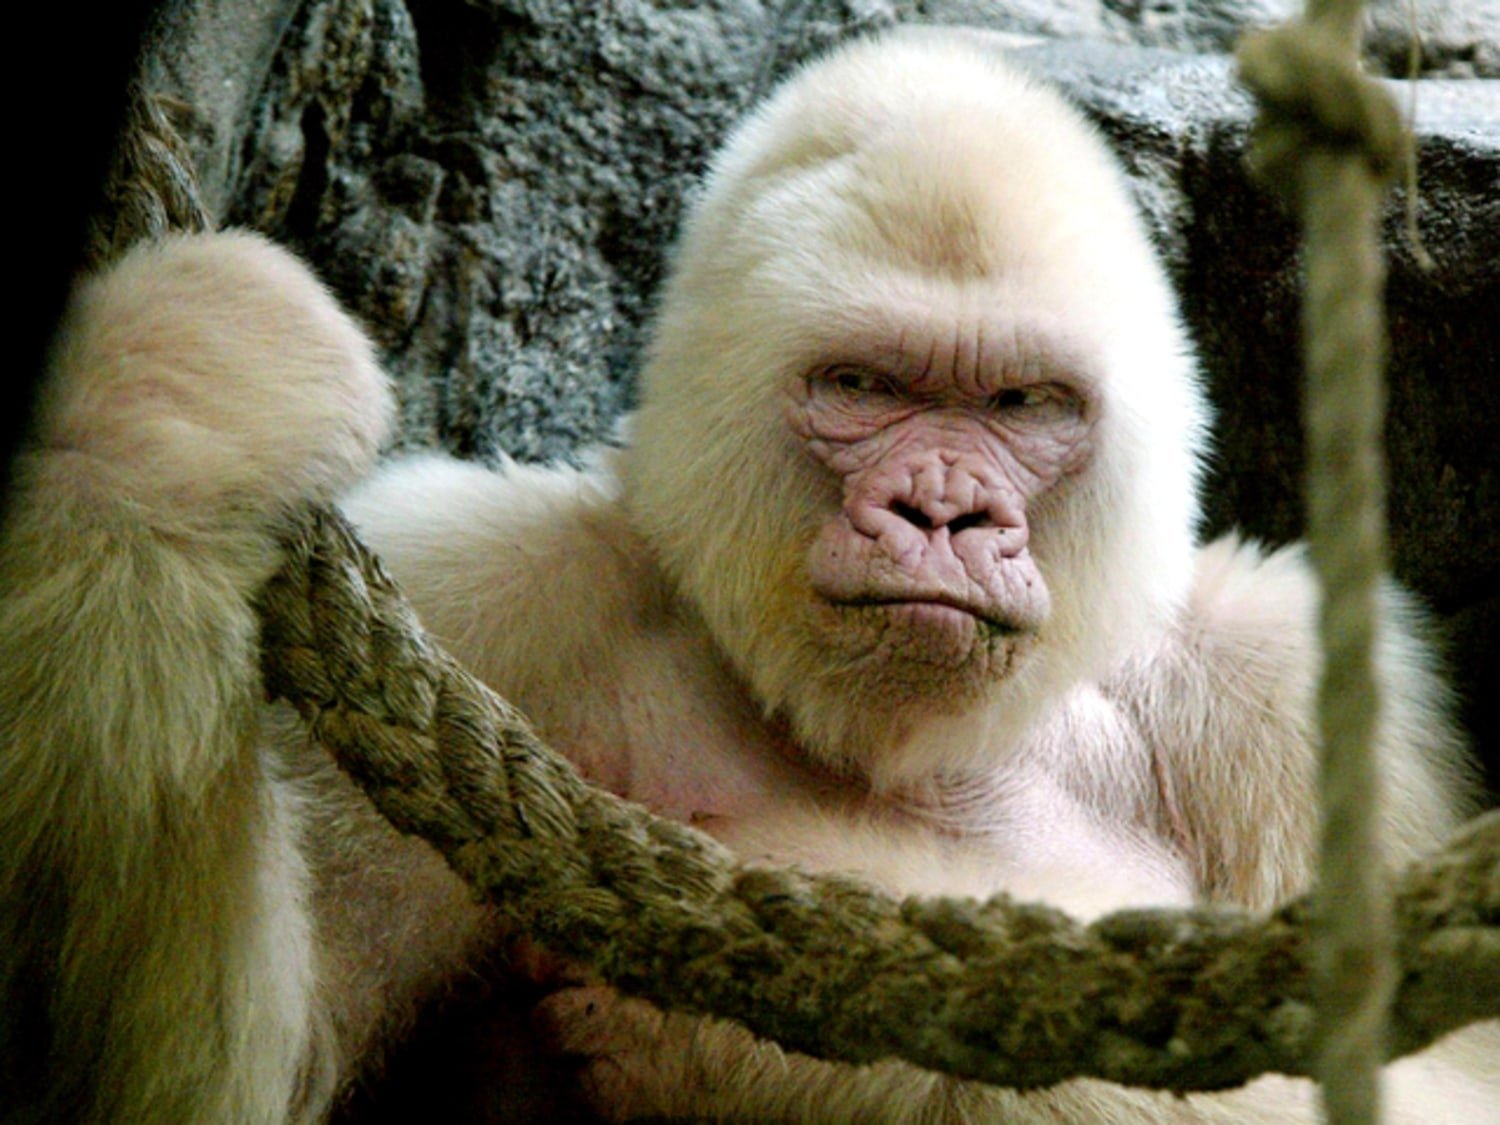 Snowflake the albino gorilla was inbred, study finds